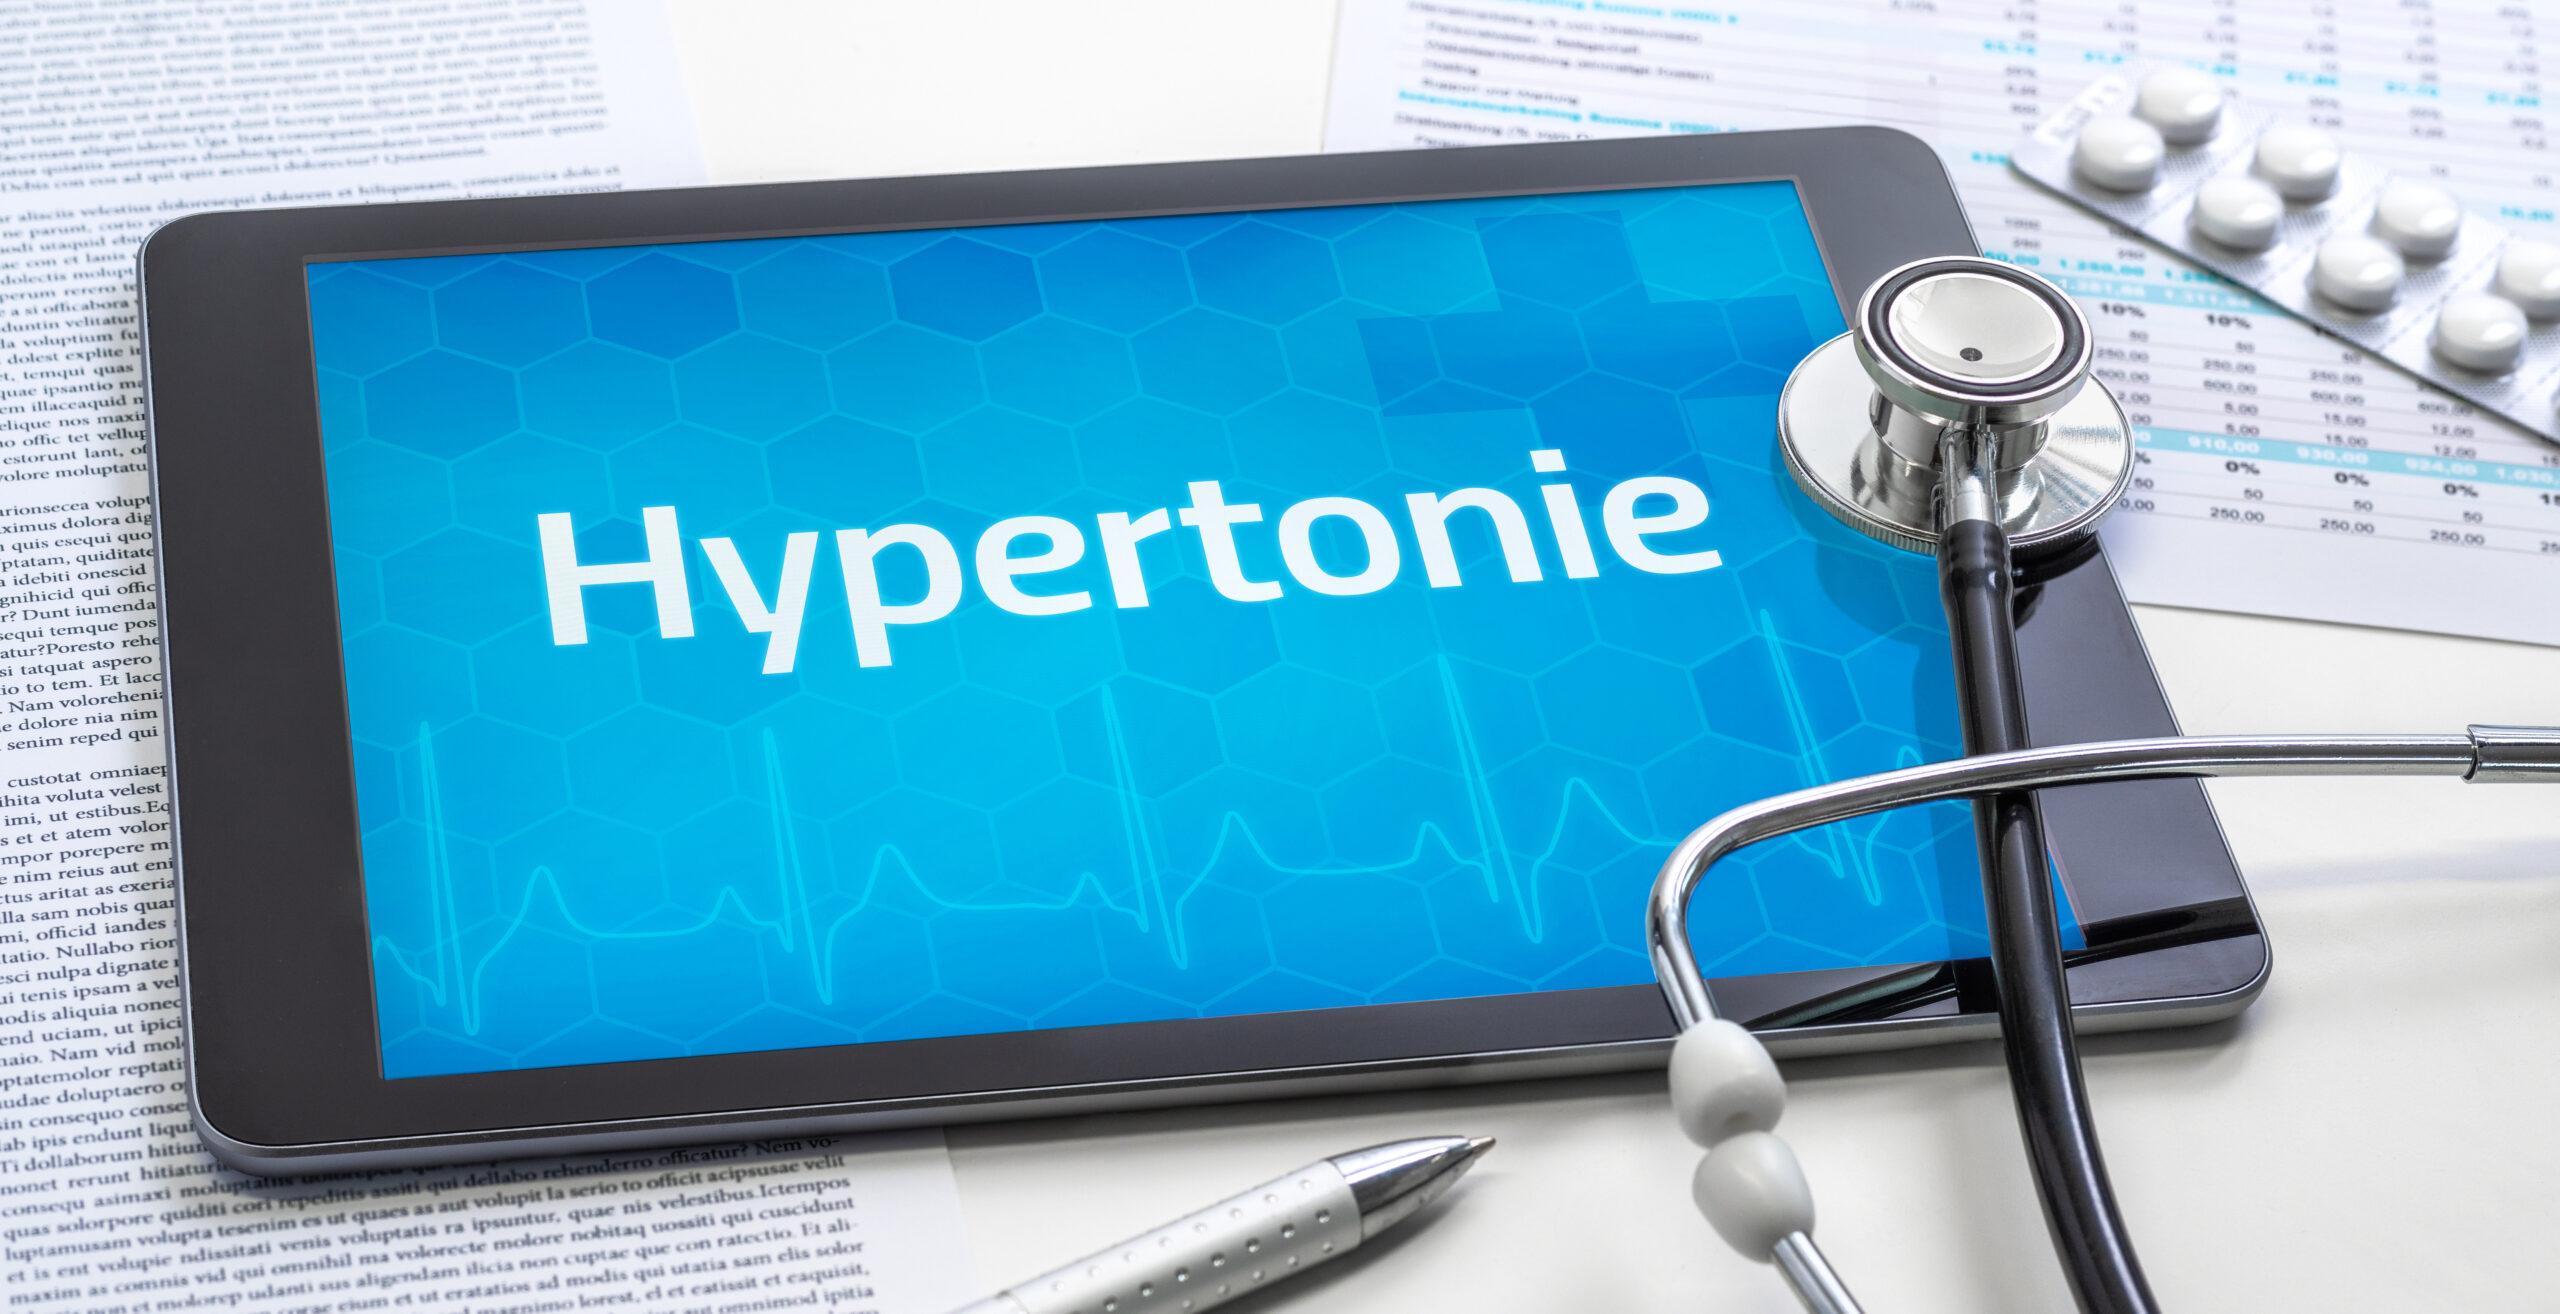 Bluthochdruck: Symptome, Ursachen und Behandlung der Hypertonie